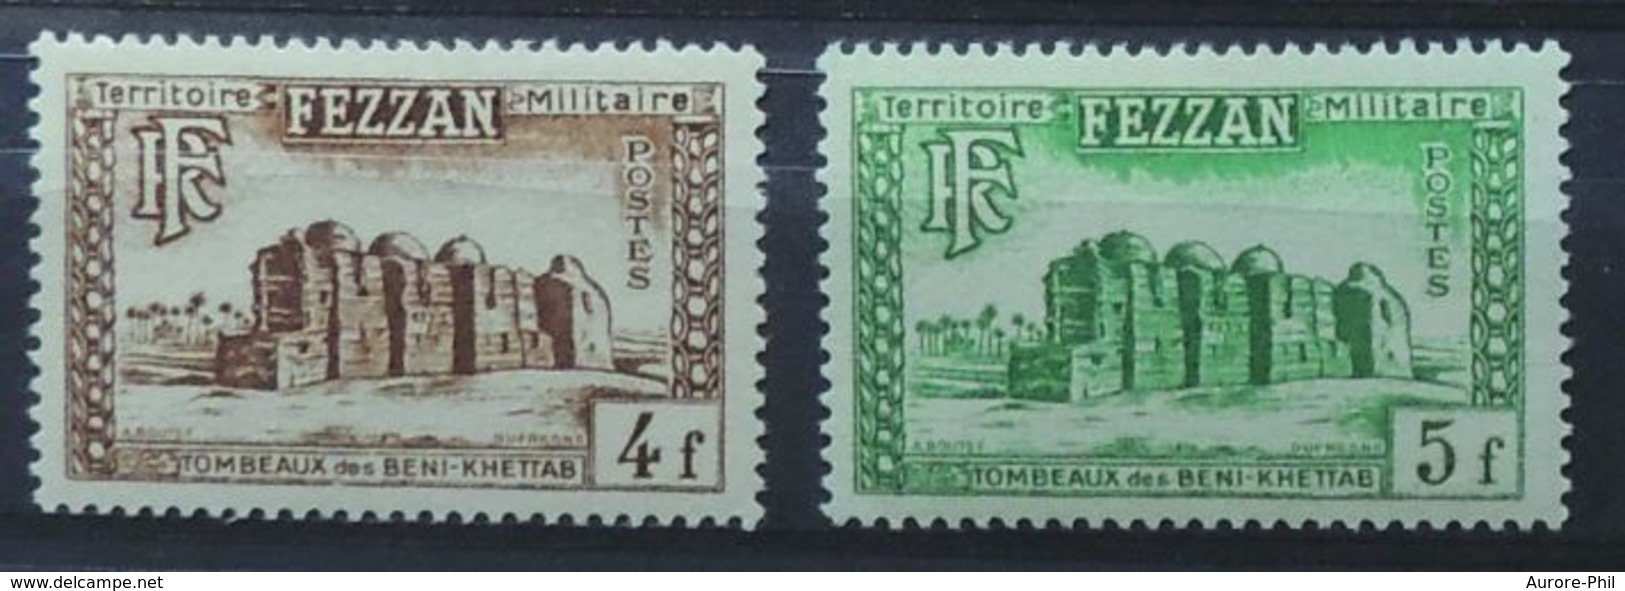 Fezzan Territoire Militaire Ex-colonie Français Les Tombeaux Des Beni-Khettab 1949 - Unused Stamps